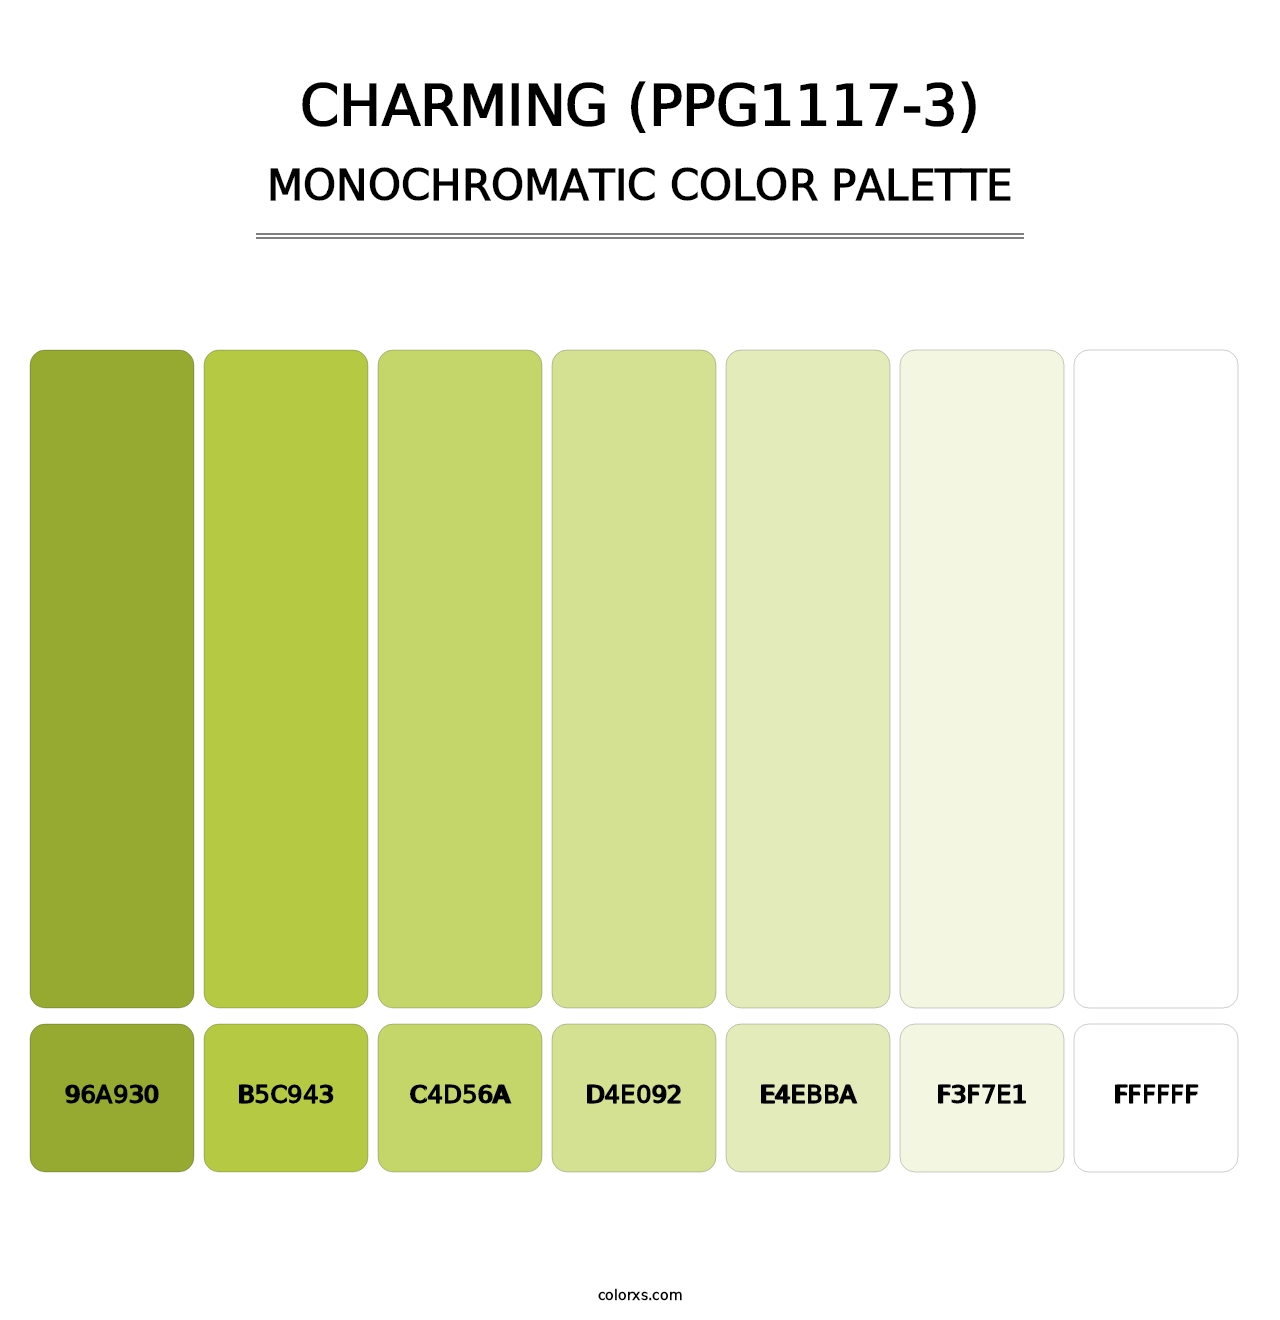 Charming (PPG1117-3) - Monochromatic Color Palette